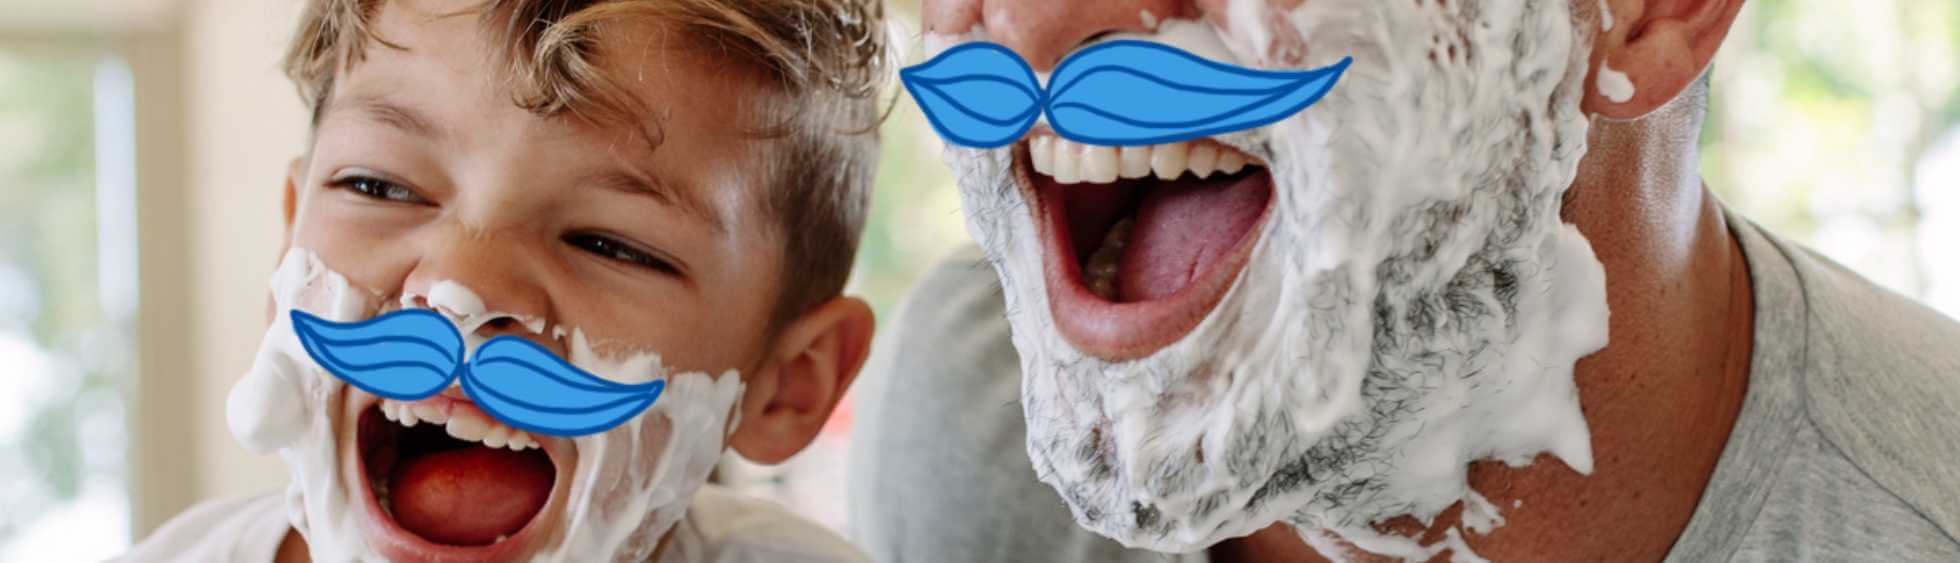 Un père et son petit fils jouant avec une crème à raser